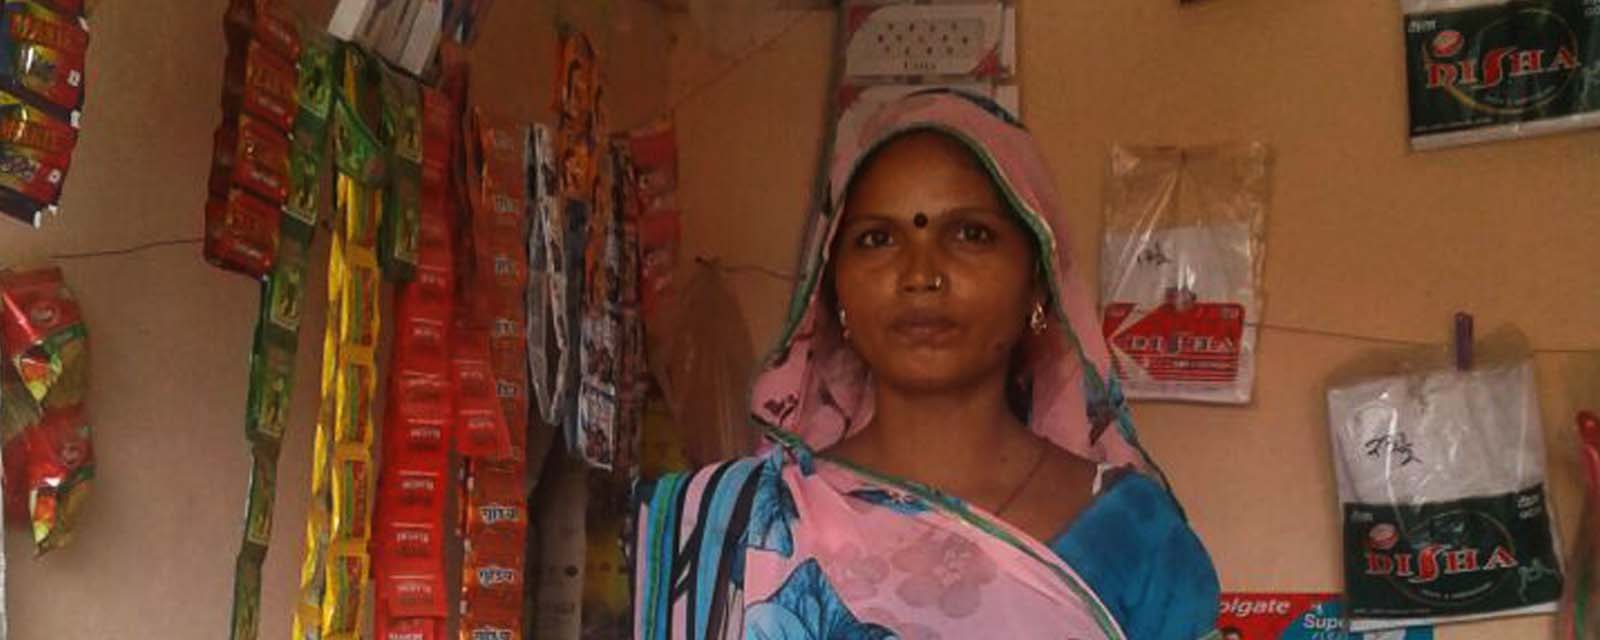 Santosh Devi in her Fancy Store.